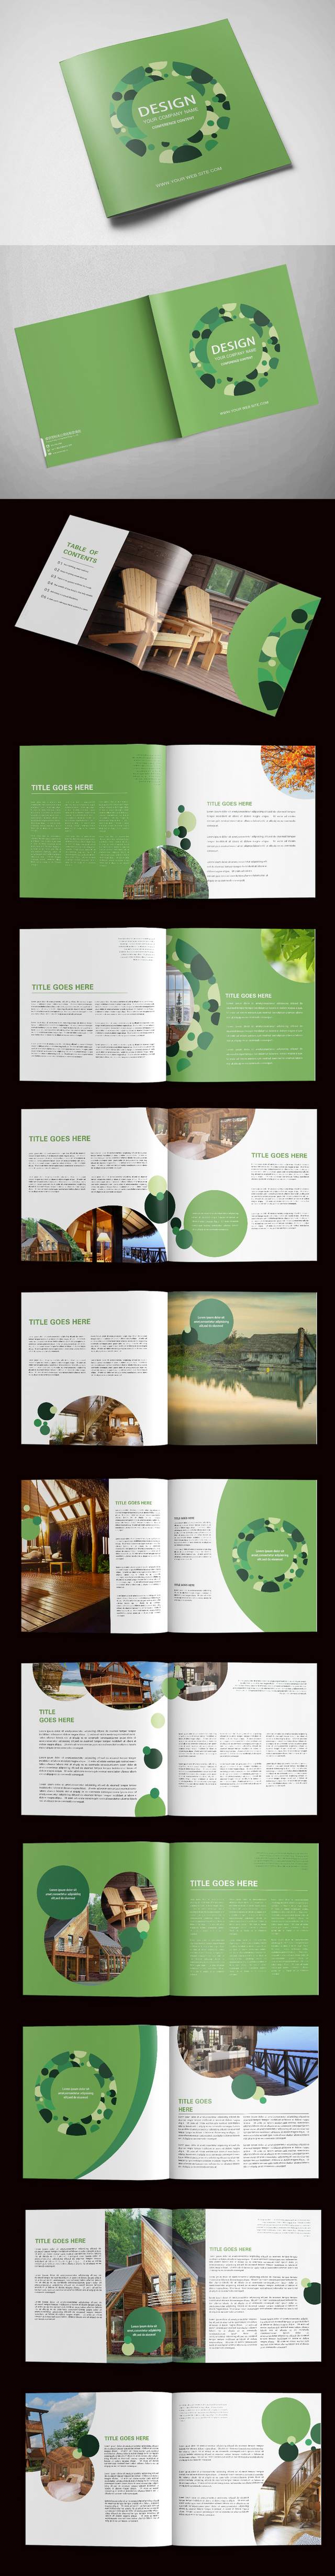 绿色高档公司画册设计